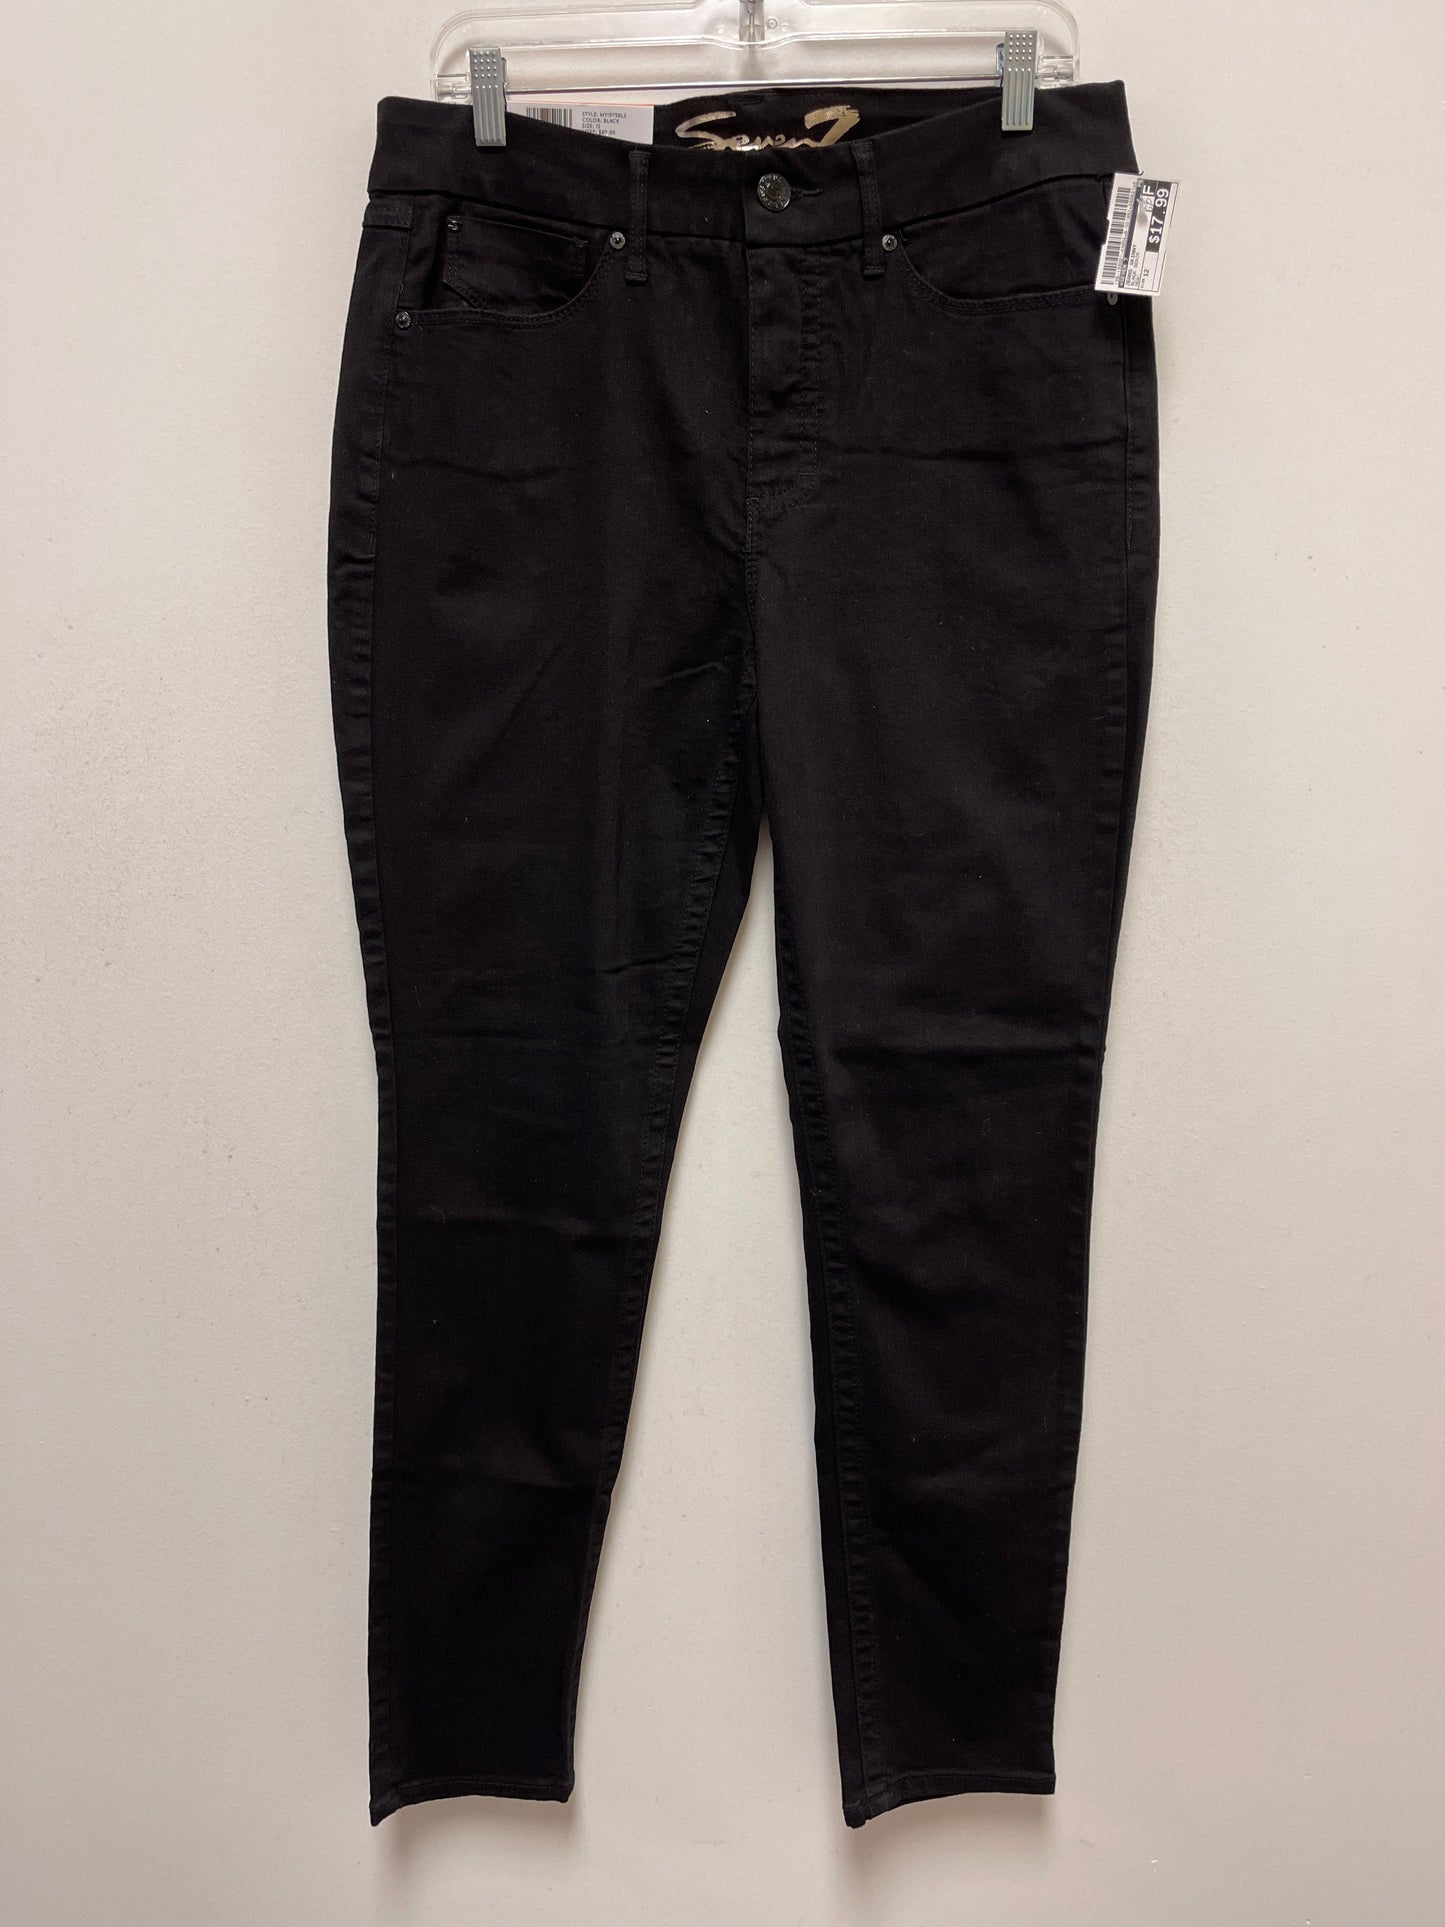 Black Denim Jeans Skinny Seven 7, Size 12